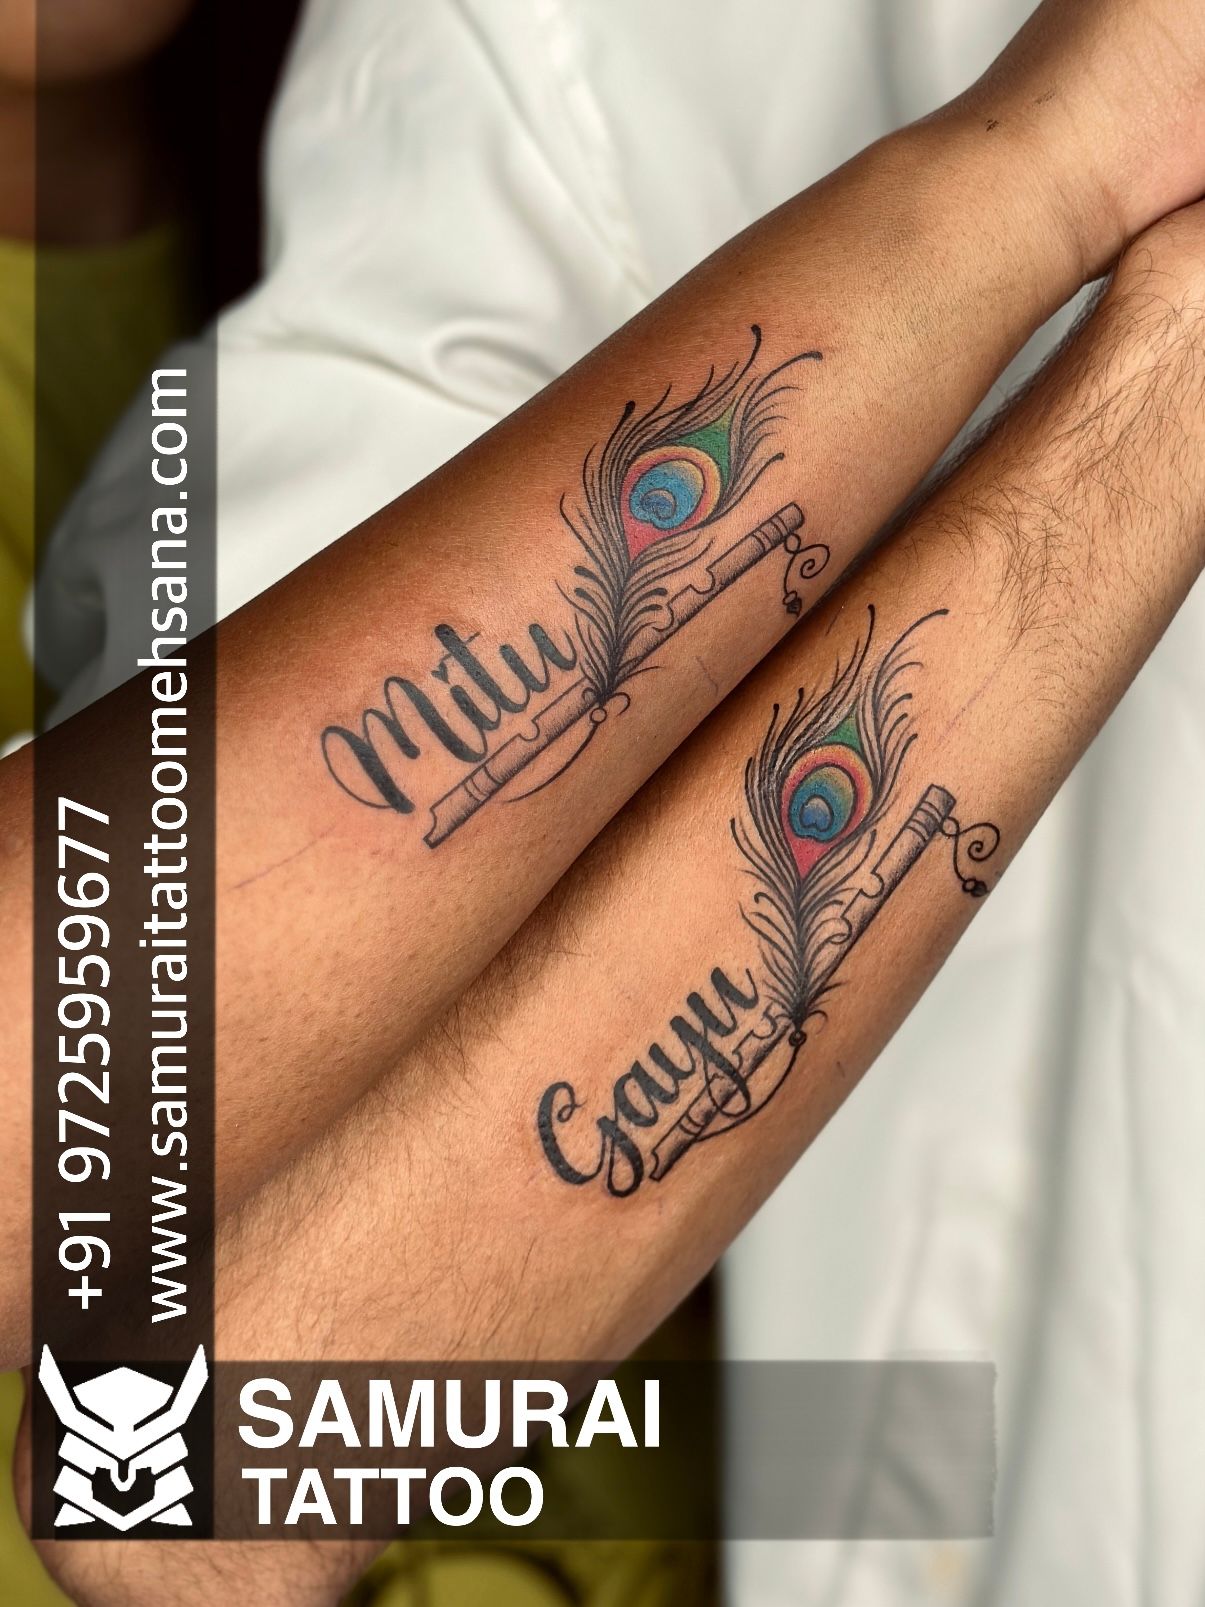 Mixed tribal tattoo design in Maori / Samoan style iPad 3 Skin | Zazzle